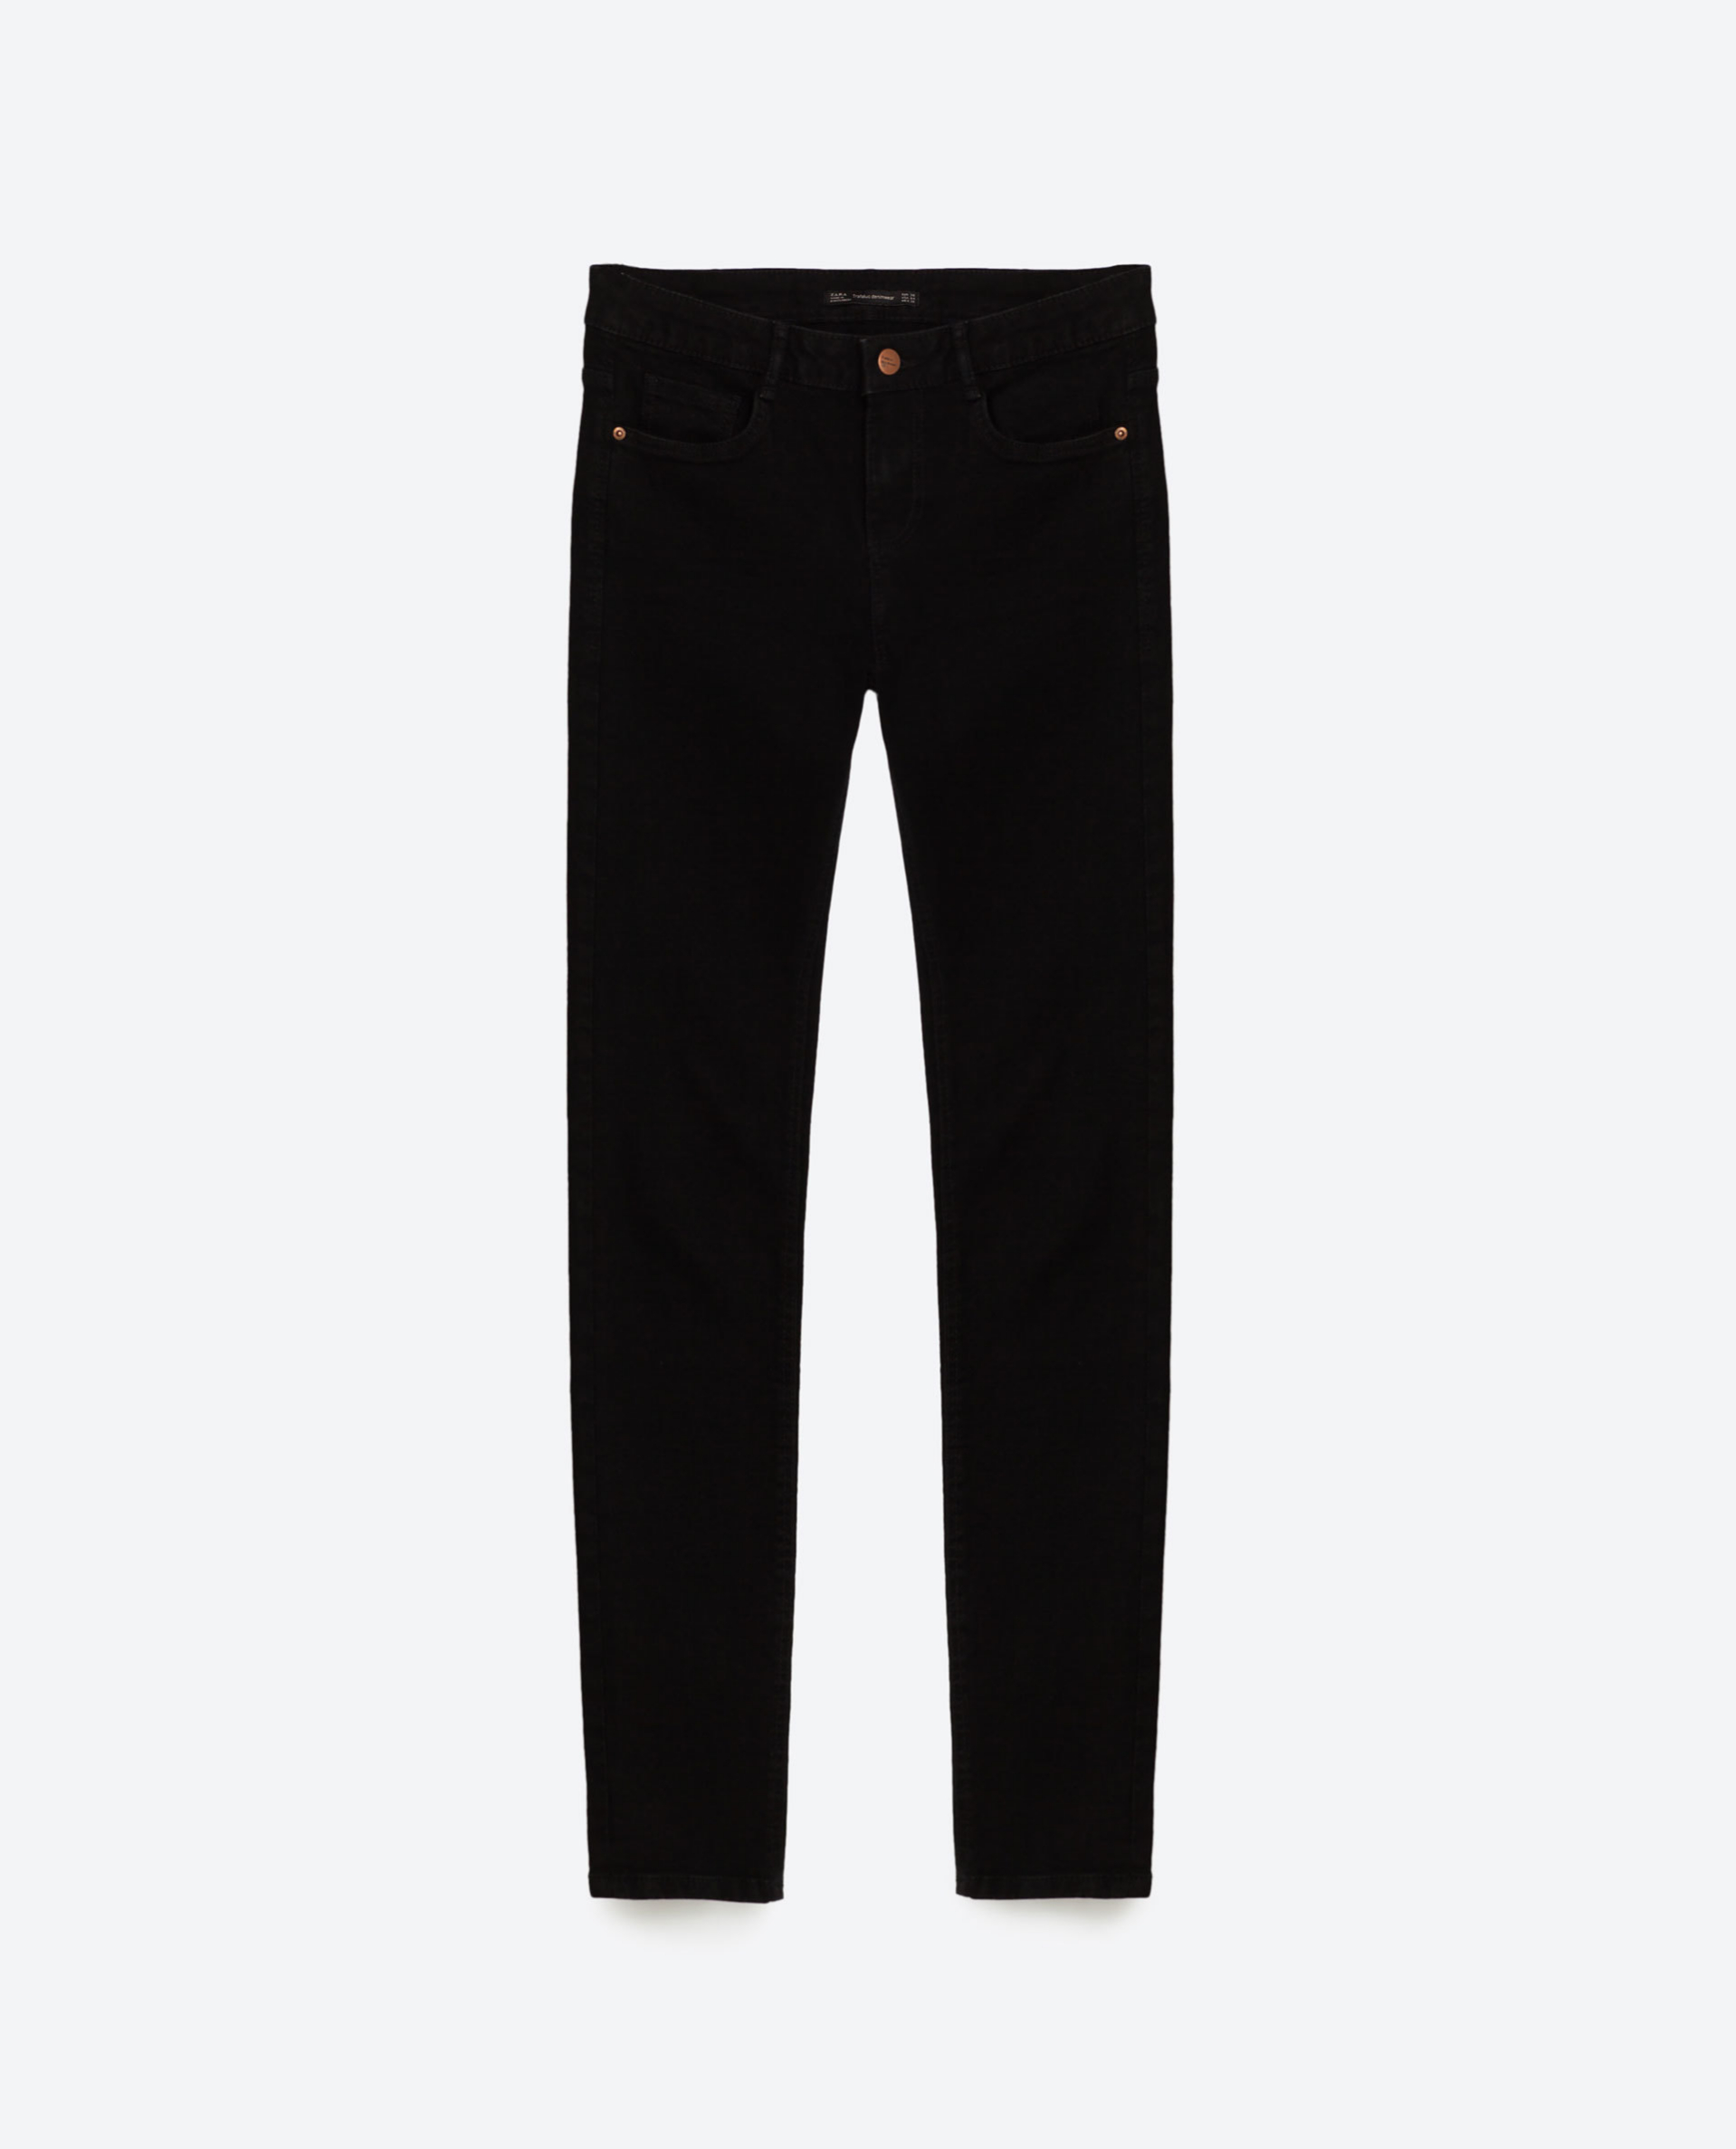 Pantalones negros. De Zara, 19,95 euros.